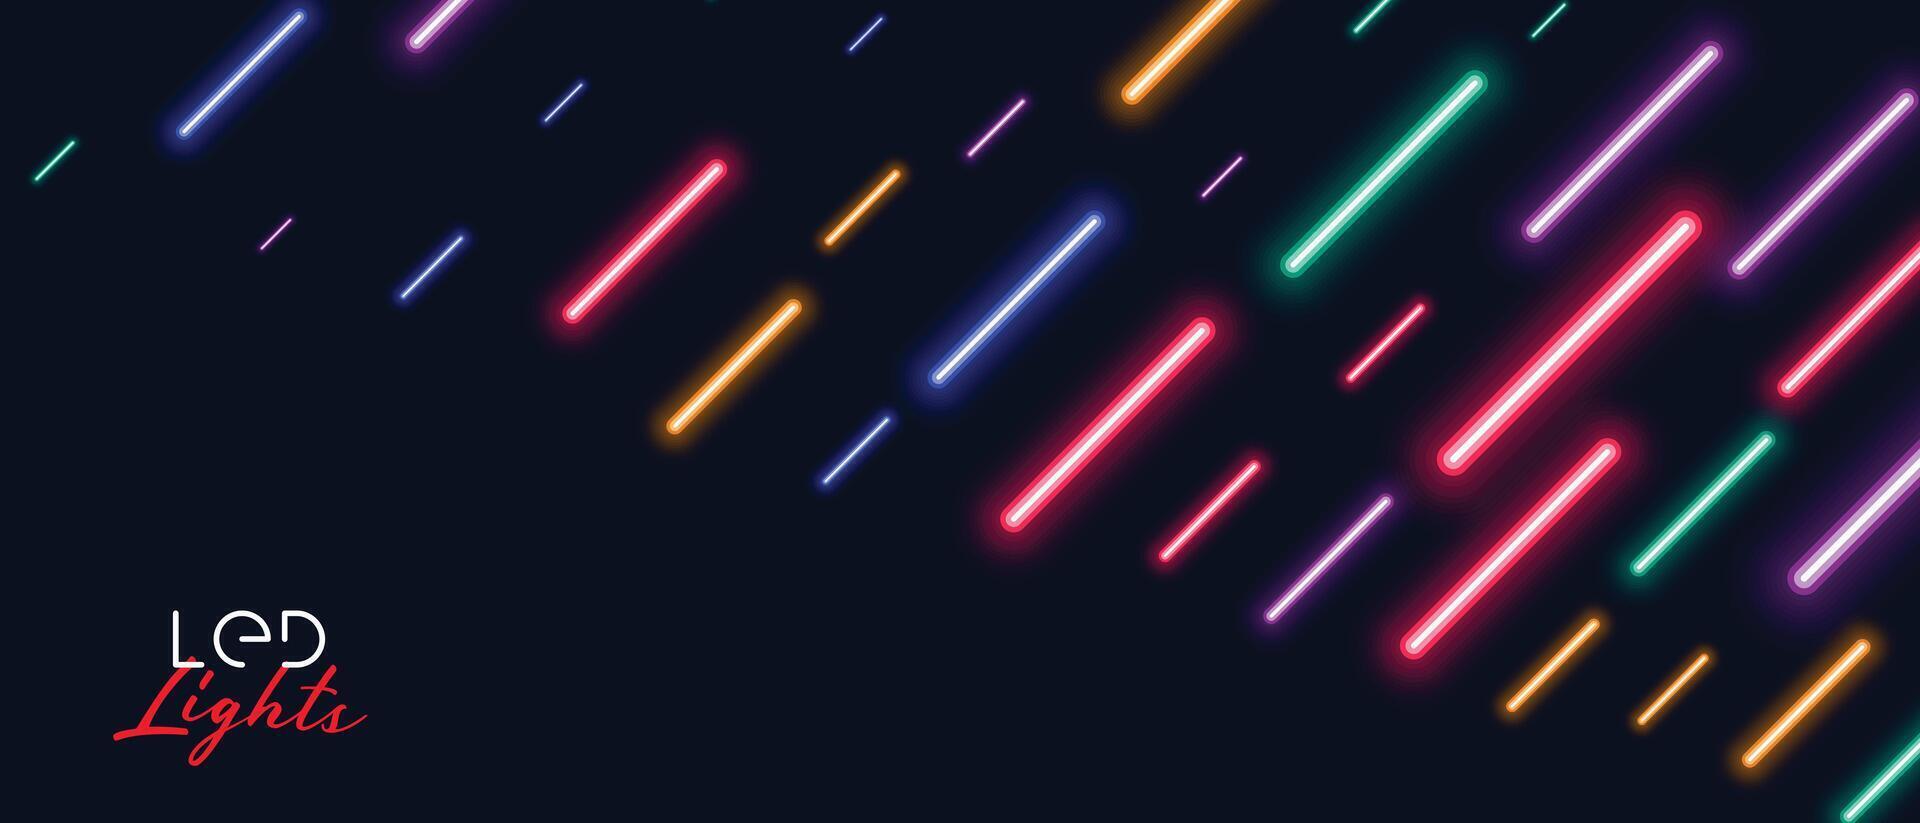 färgrik neon led ljus regn bakgrund design vektor